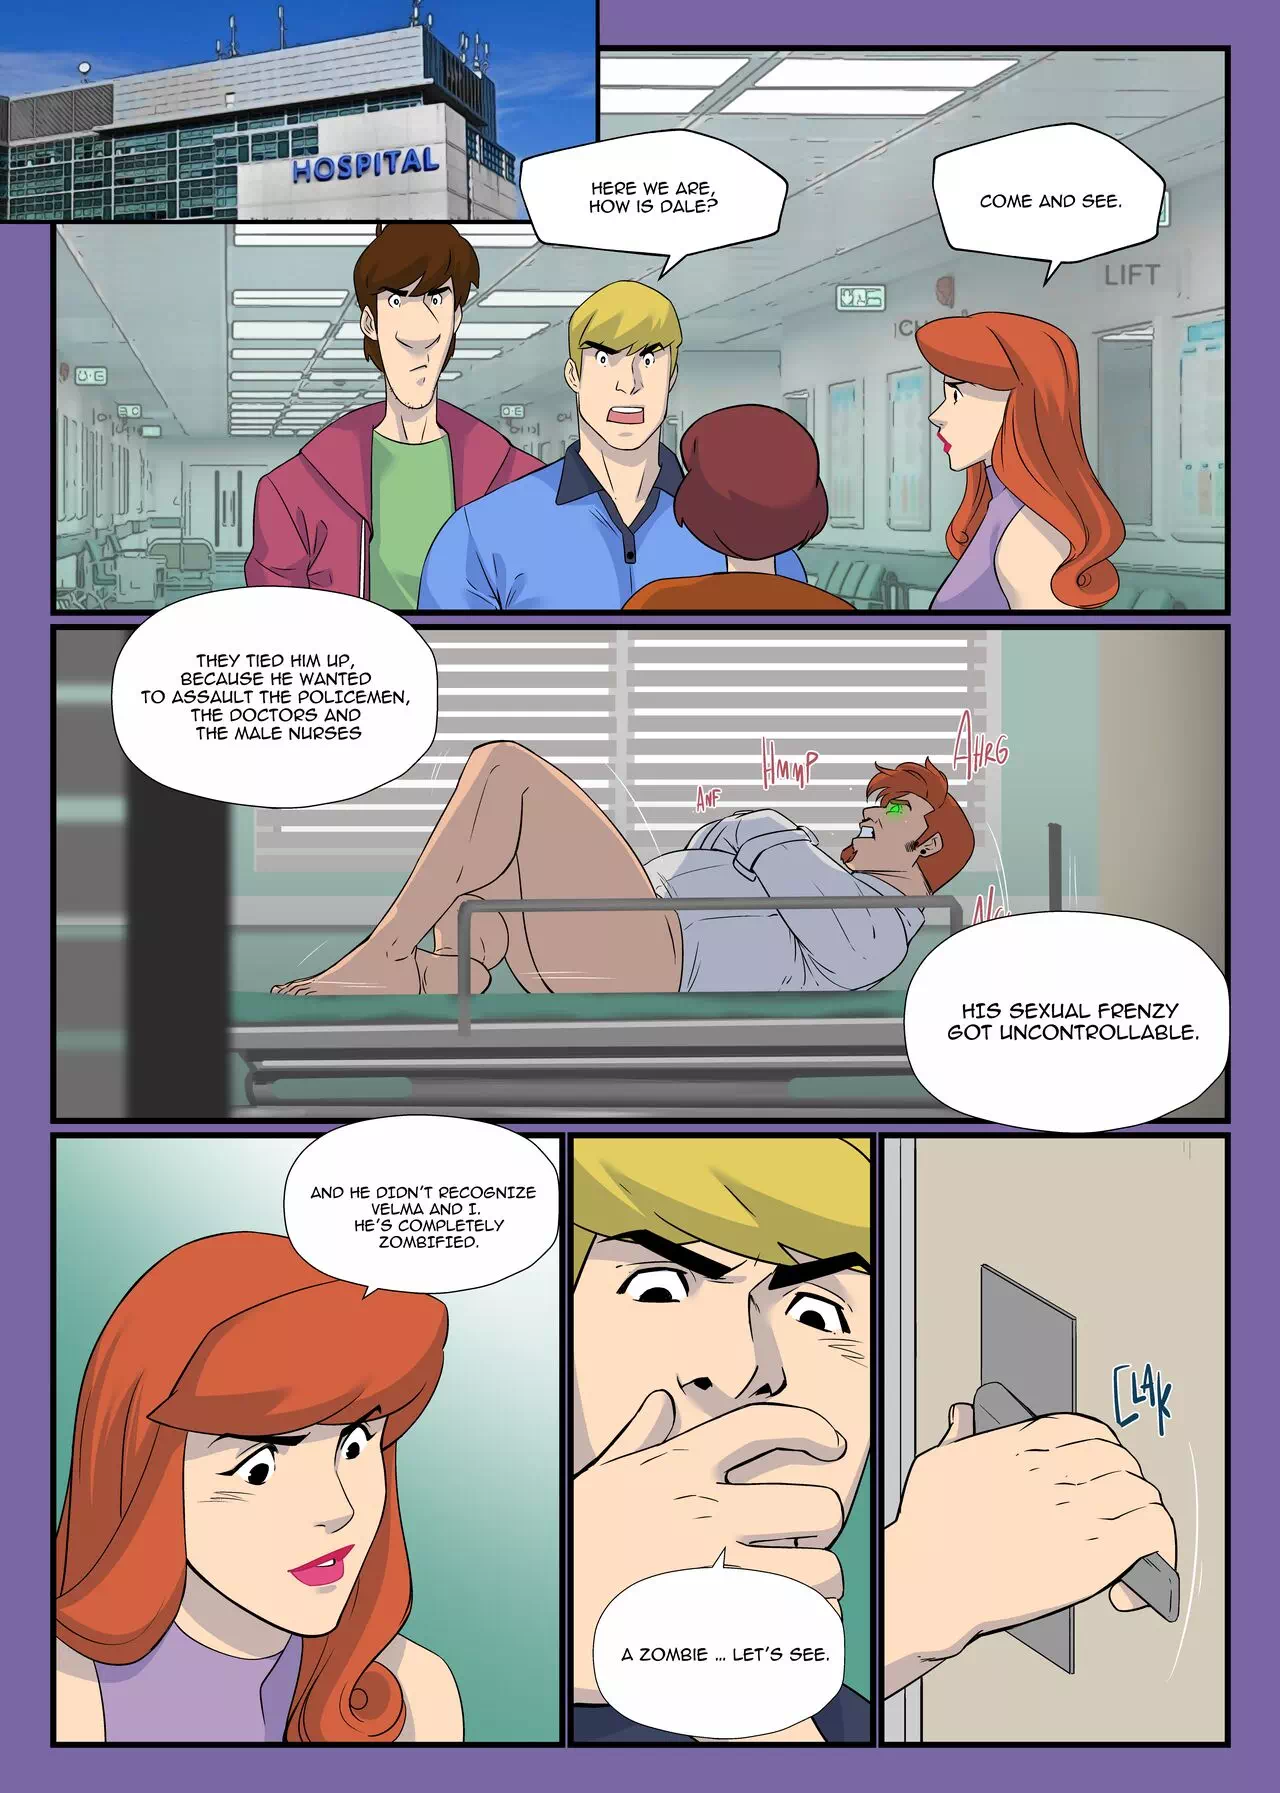 Yaoi porn comics Scooby-Doo â€“ Scooby Dudes: The sex zombies. Part 1 Â» Page 6